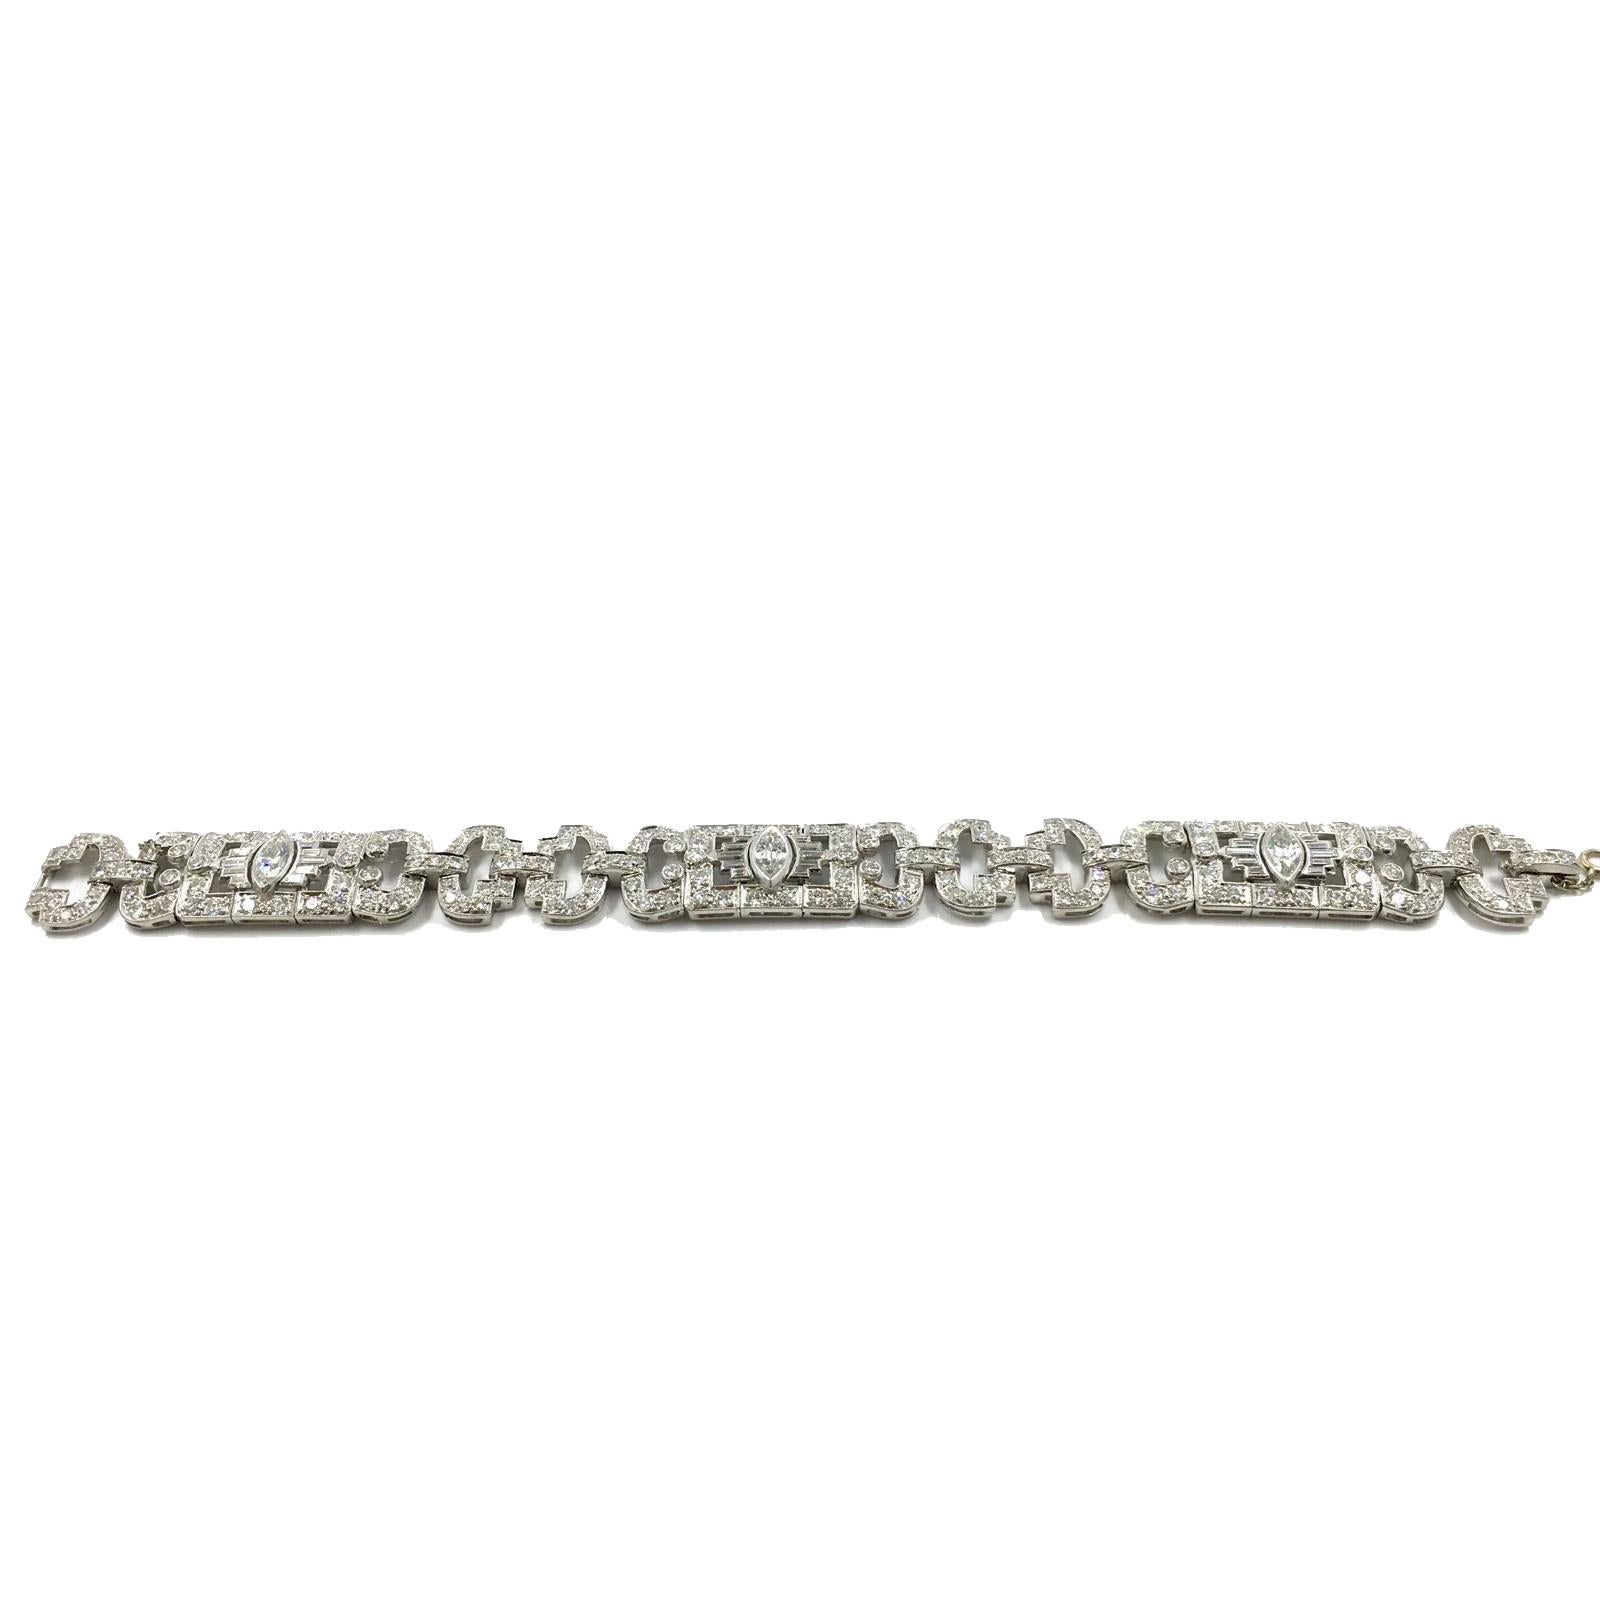 Style: Chain Link Bracelet

Era: 1930’s , Art Deco

Metal: Platinum

Stones: 3 Marquise Shaped Brilliant Diamonds (VVS2 / G)

30 Tapered Baguette cut Diamonds (VVS2 / F-G)

198 Round Brilliant Cut Diamonds (VS1 / G)
Total Carat Weight: 14 Total